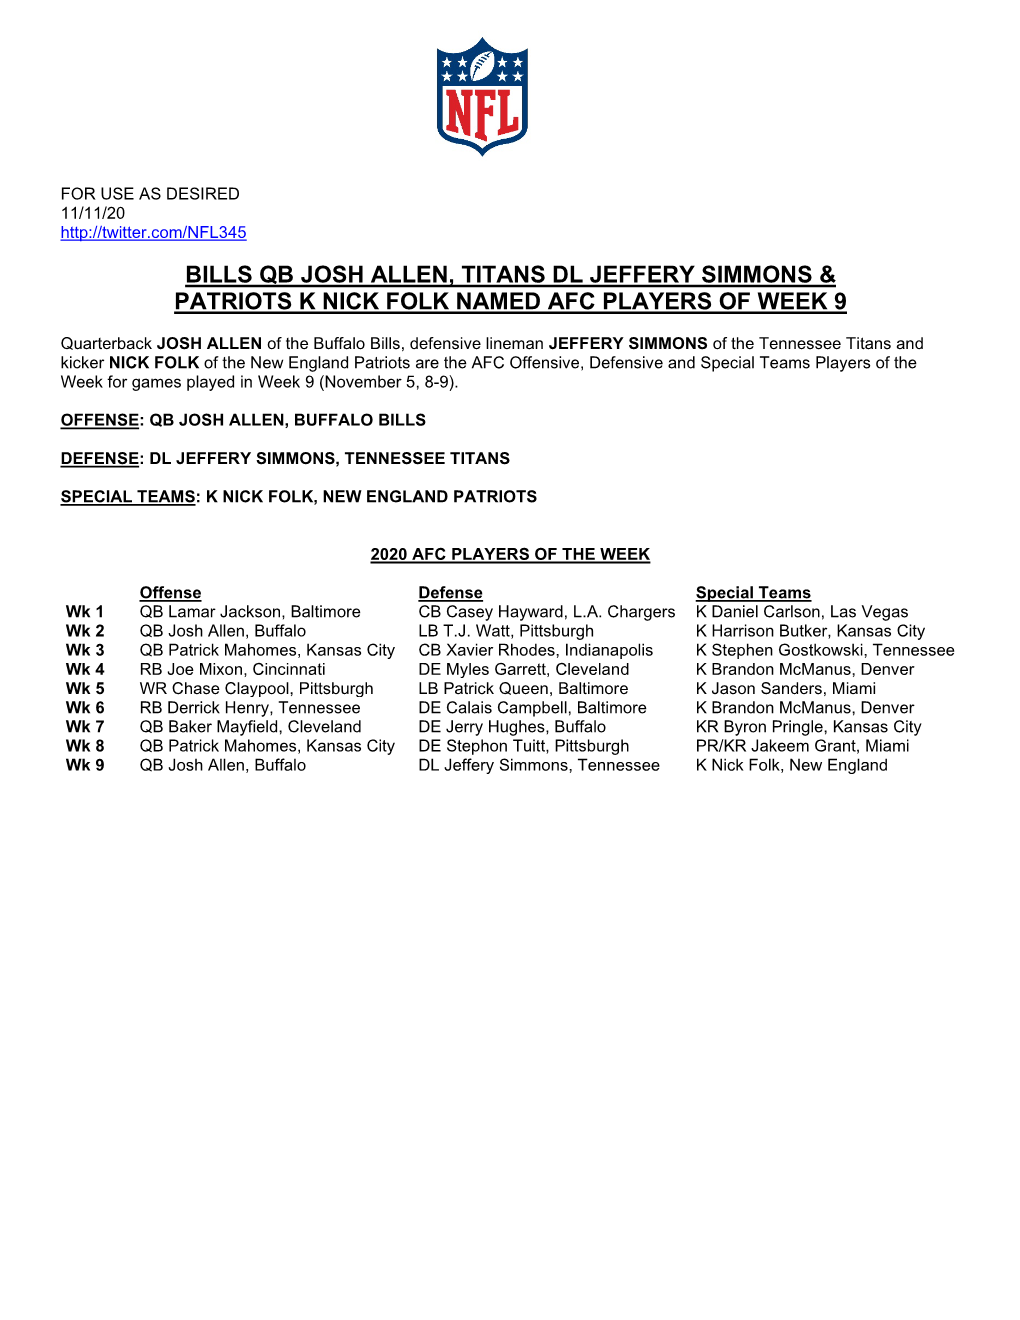 Bills Qb Josh Allen, Titans Dl Jeffery Simmons & Patriots K Nick Folk Named Afc Players of Week 9